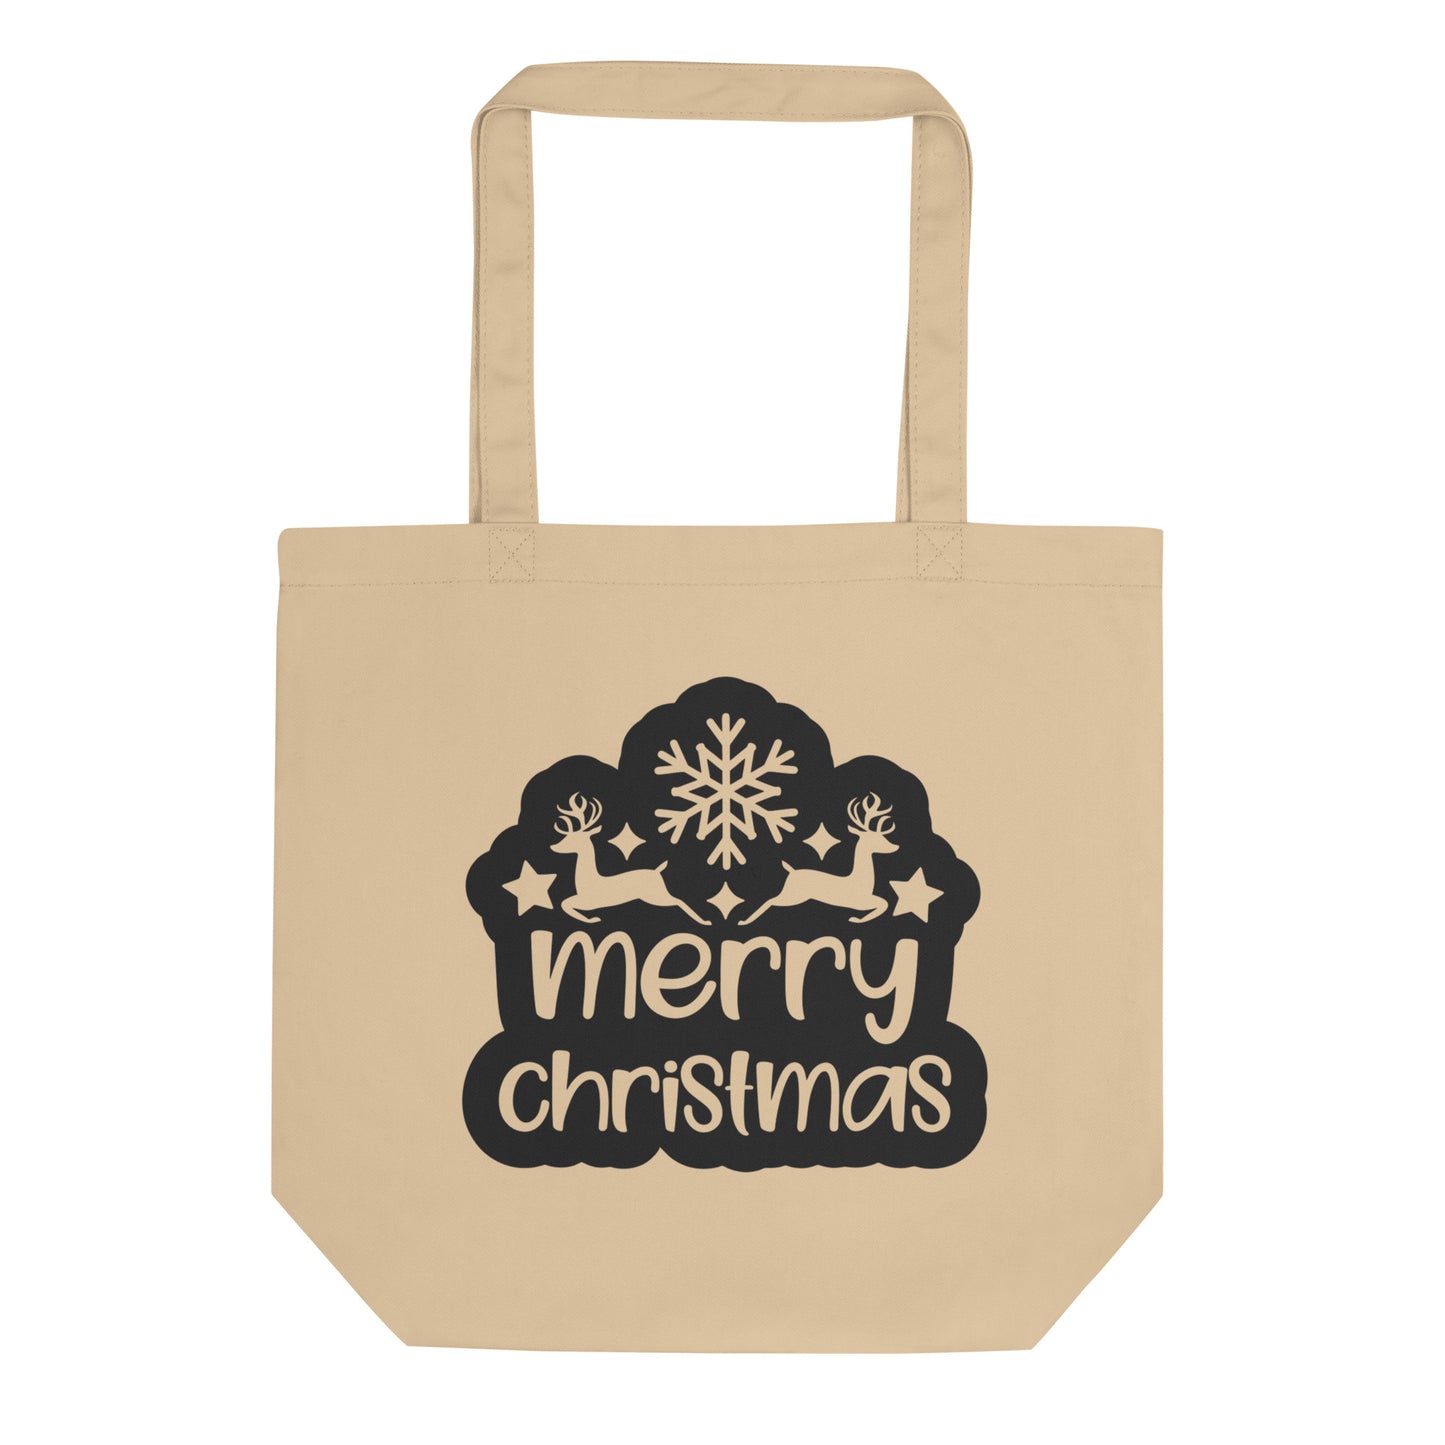 Merry Christmas Eco Tote Bag